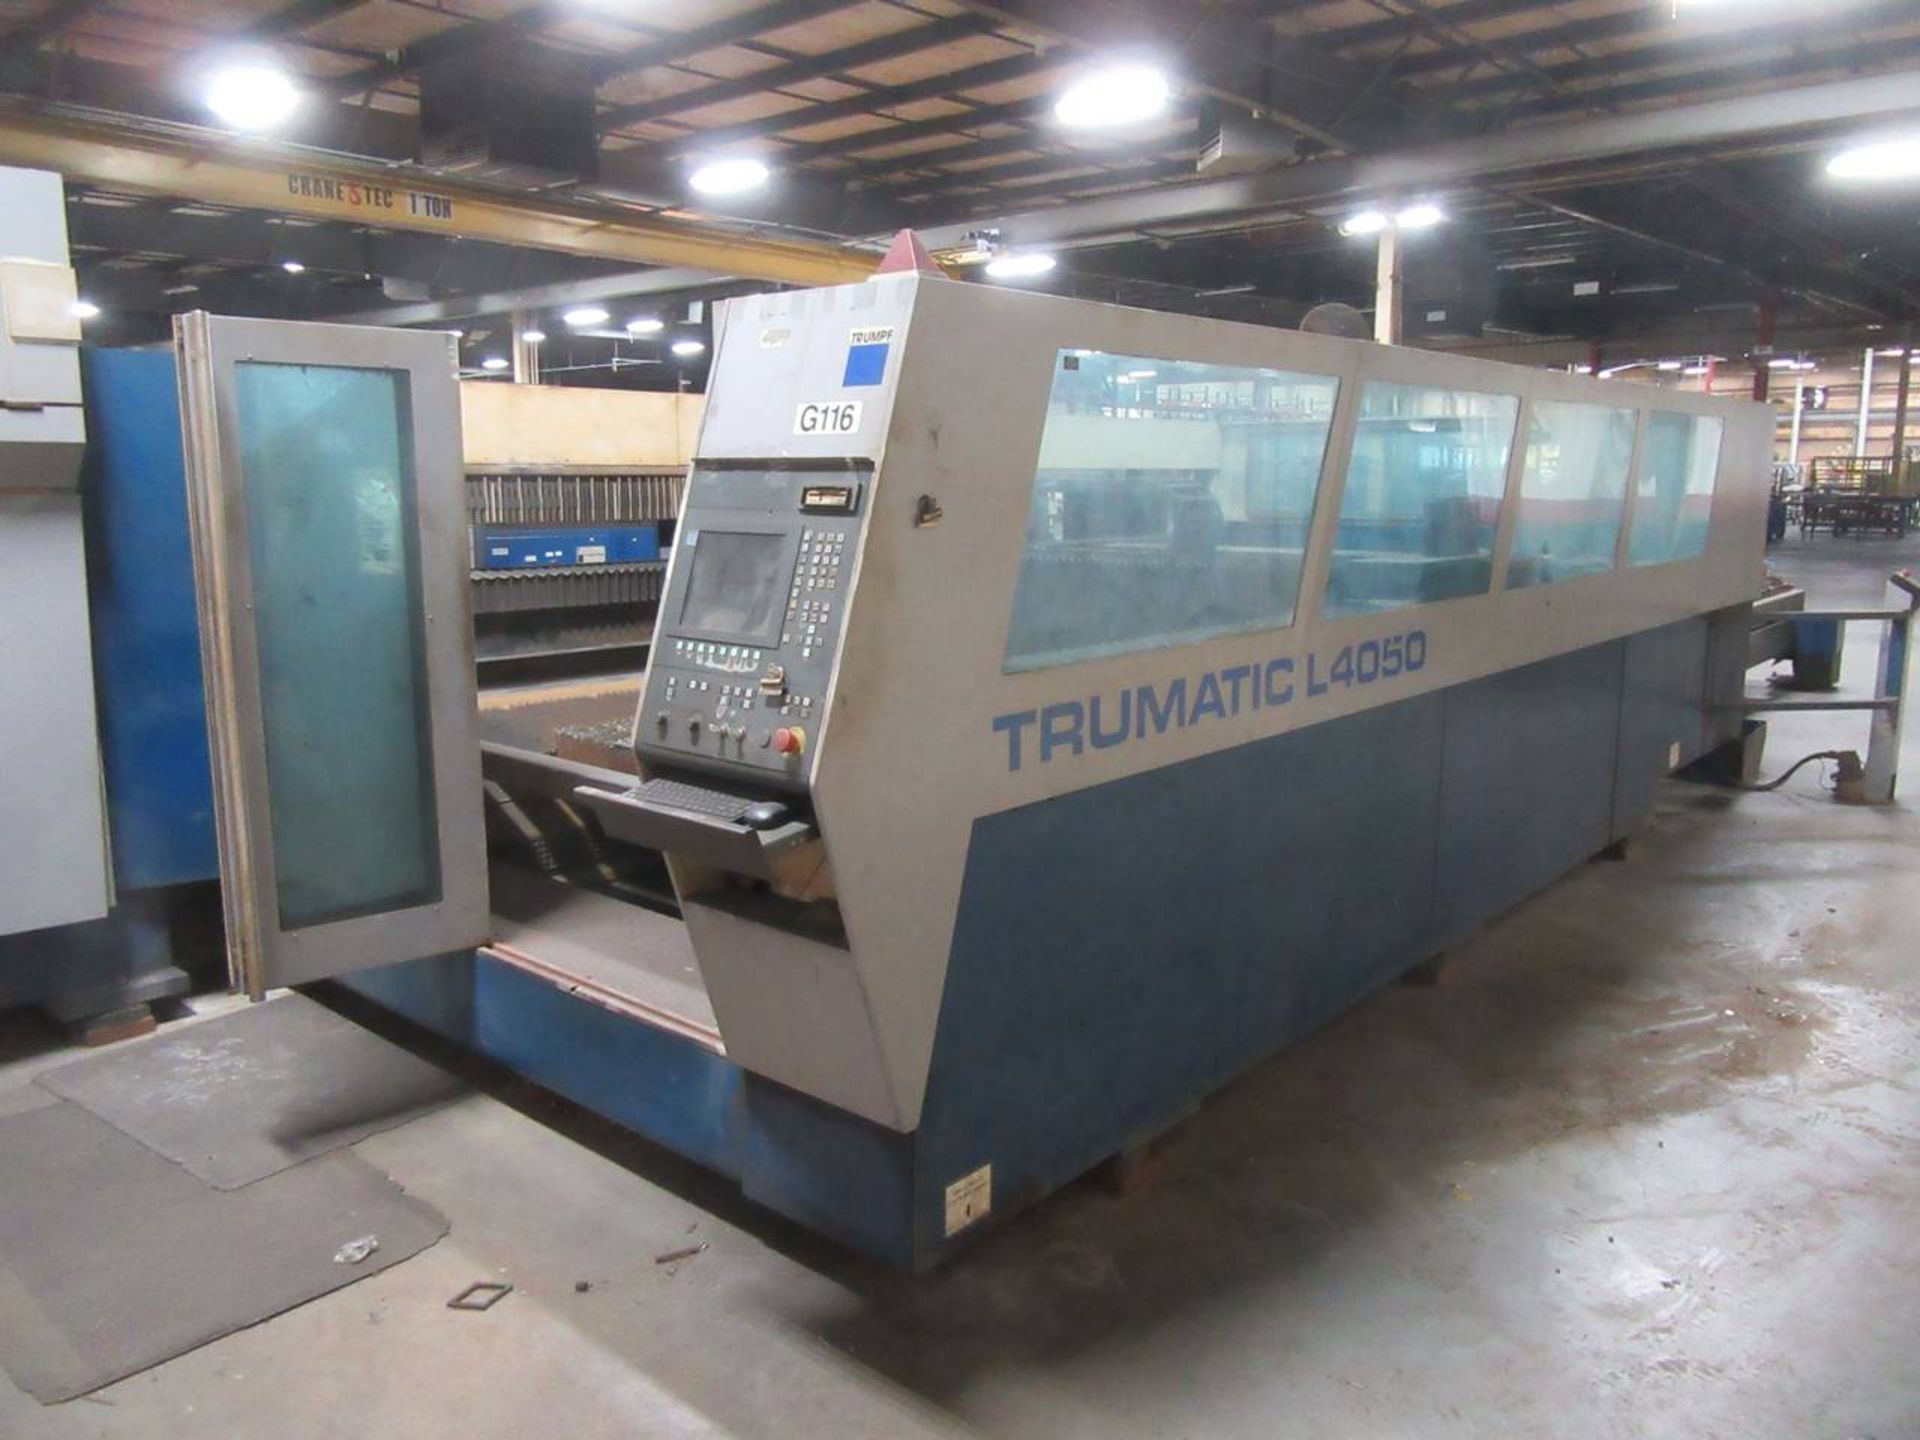 2004 Trumpf Trumatic L-4050 CNC Laser Cutting Machine - Image 5 of 8